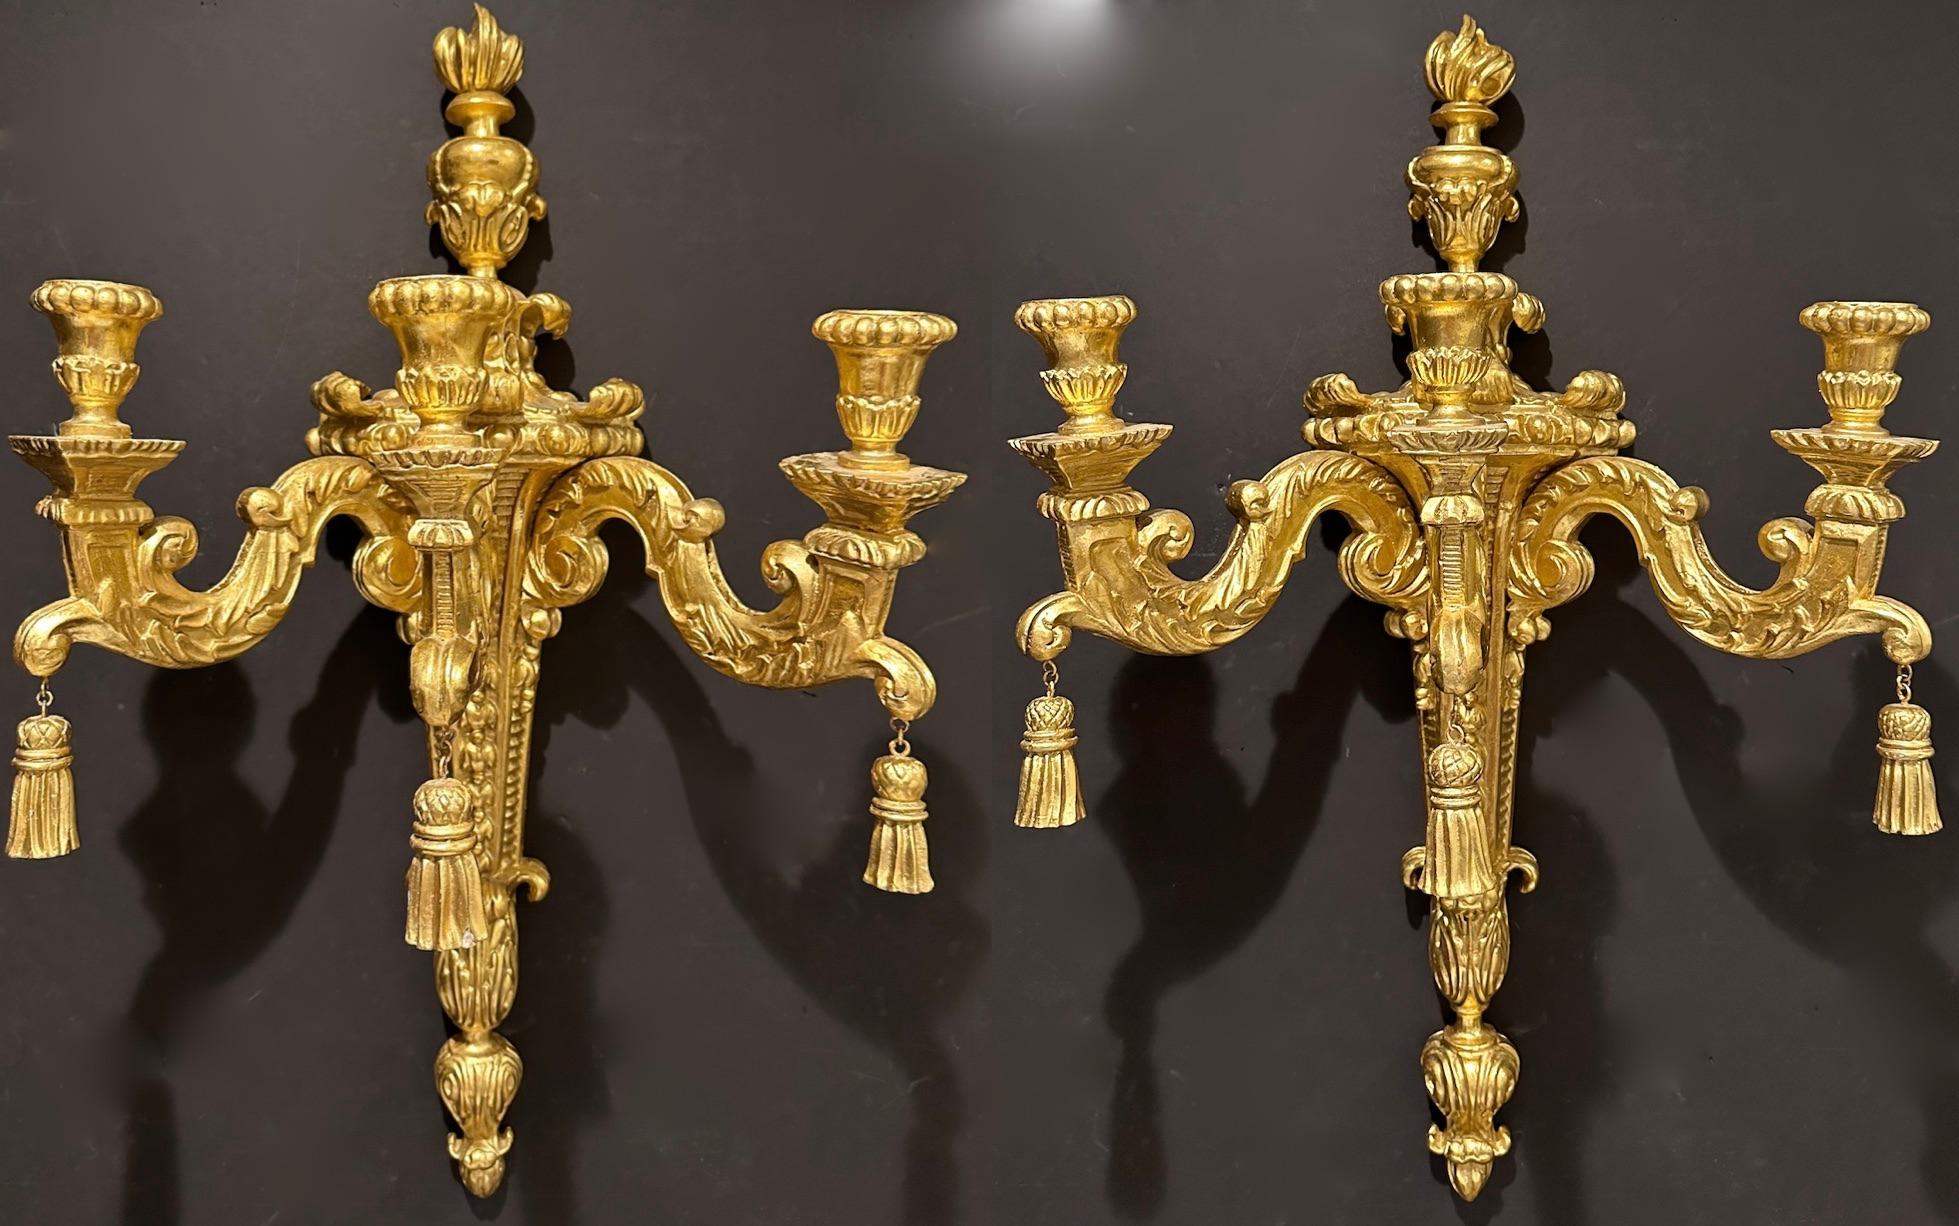 Großer und beeindruckender 3-armiger Wandleuchter aus geschnitztem und vergoldetem Holz im Louis XVI-Stil. Urne und Flamme für die Spitze mit Quasten, die an jedem Arm hängen.
Diese Wandleuchten sind derzeit NICHT an das Stromnetz angeschlossen,